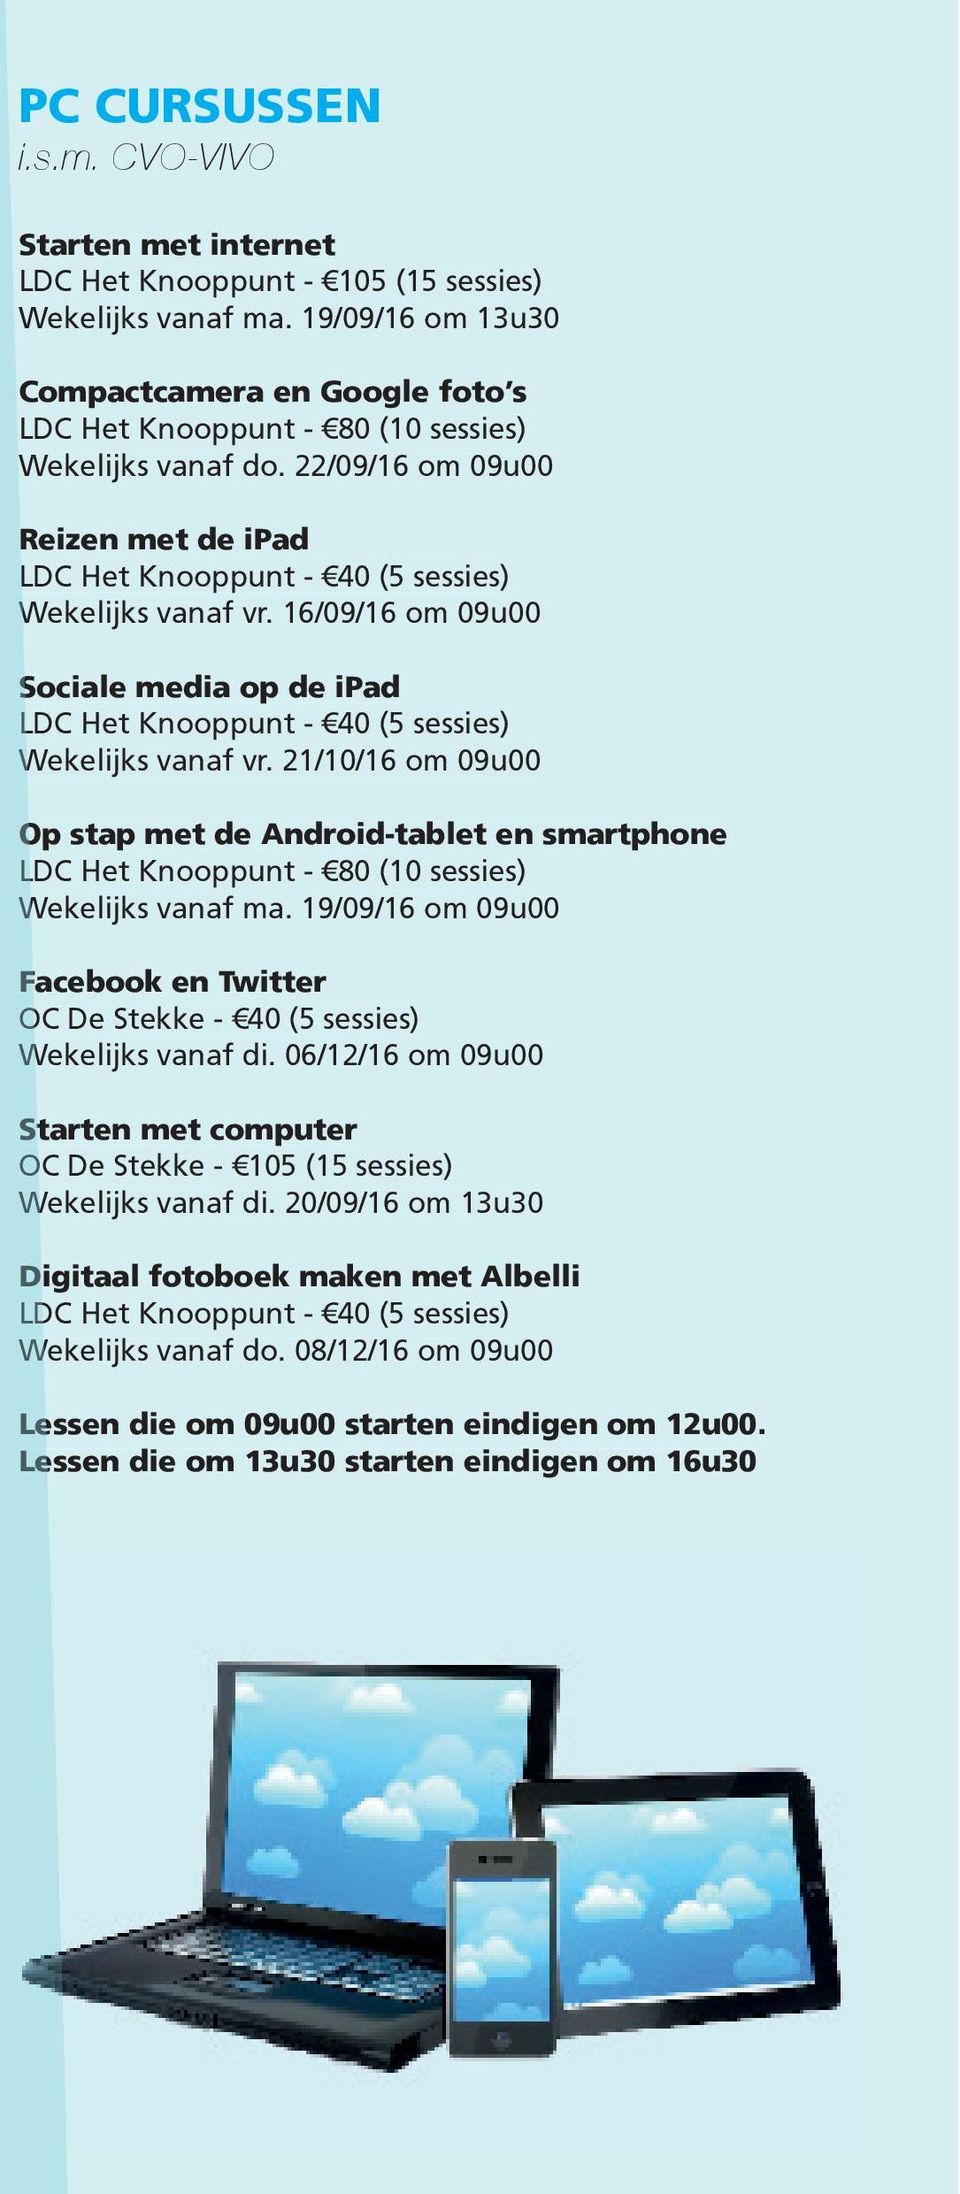 16/09/16 om 09u00 Sociale media op de ipad LDC Het Knooppunt - 40 (5 sessies) Wekelijks vanaf vr.